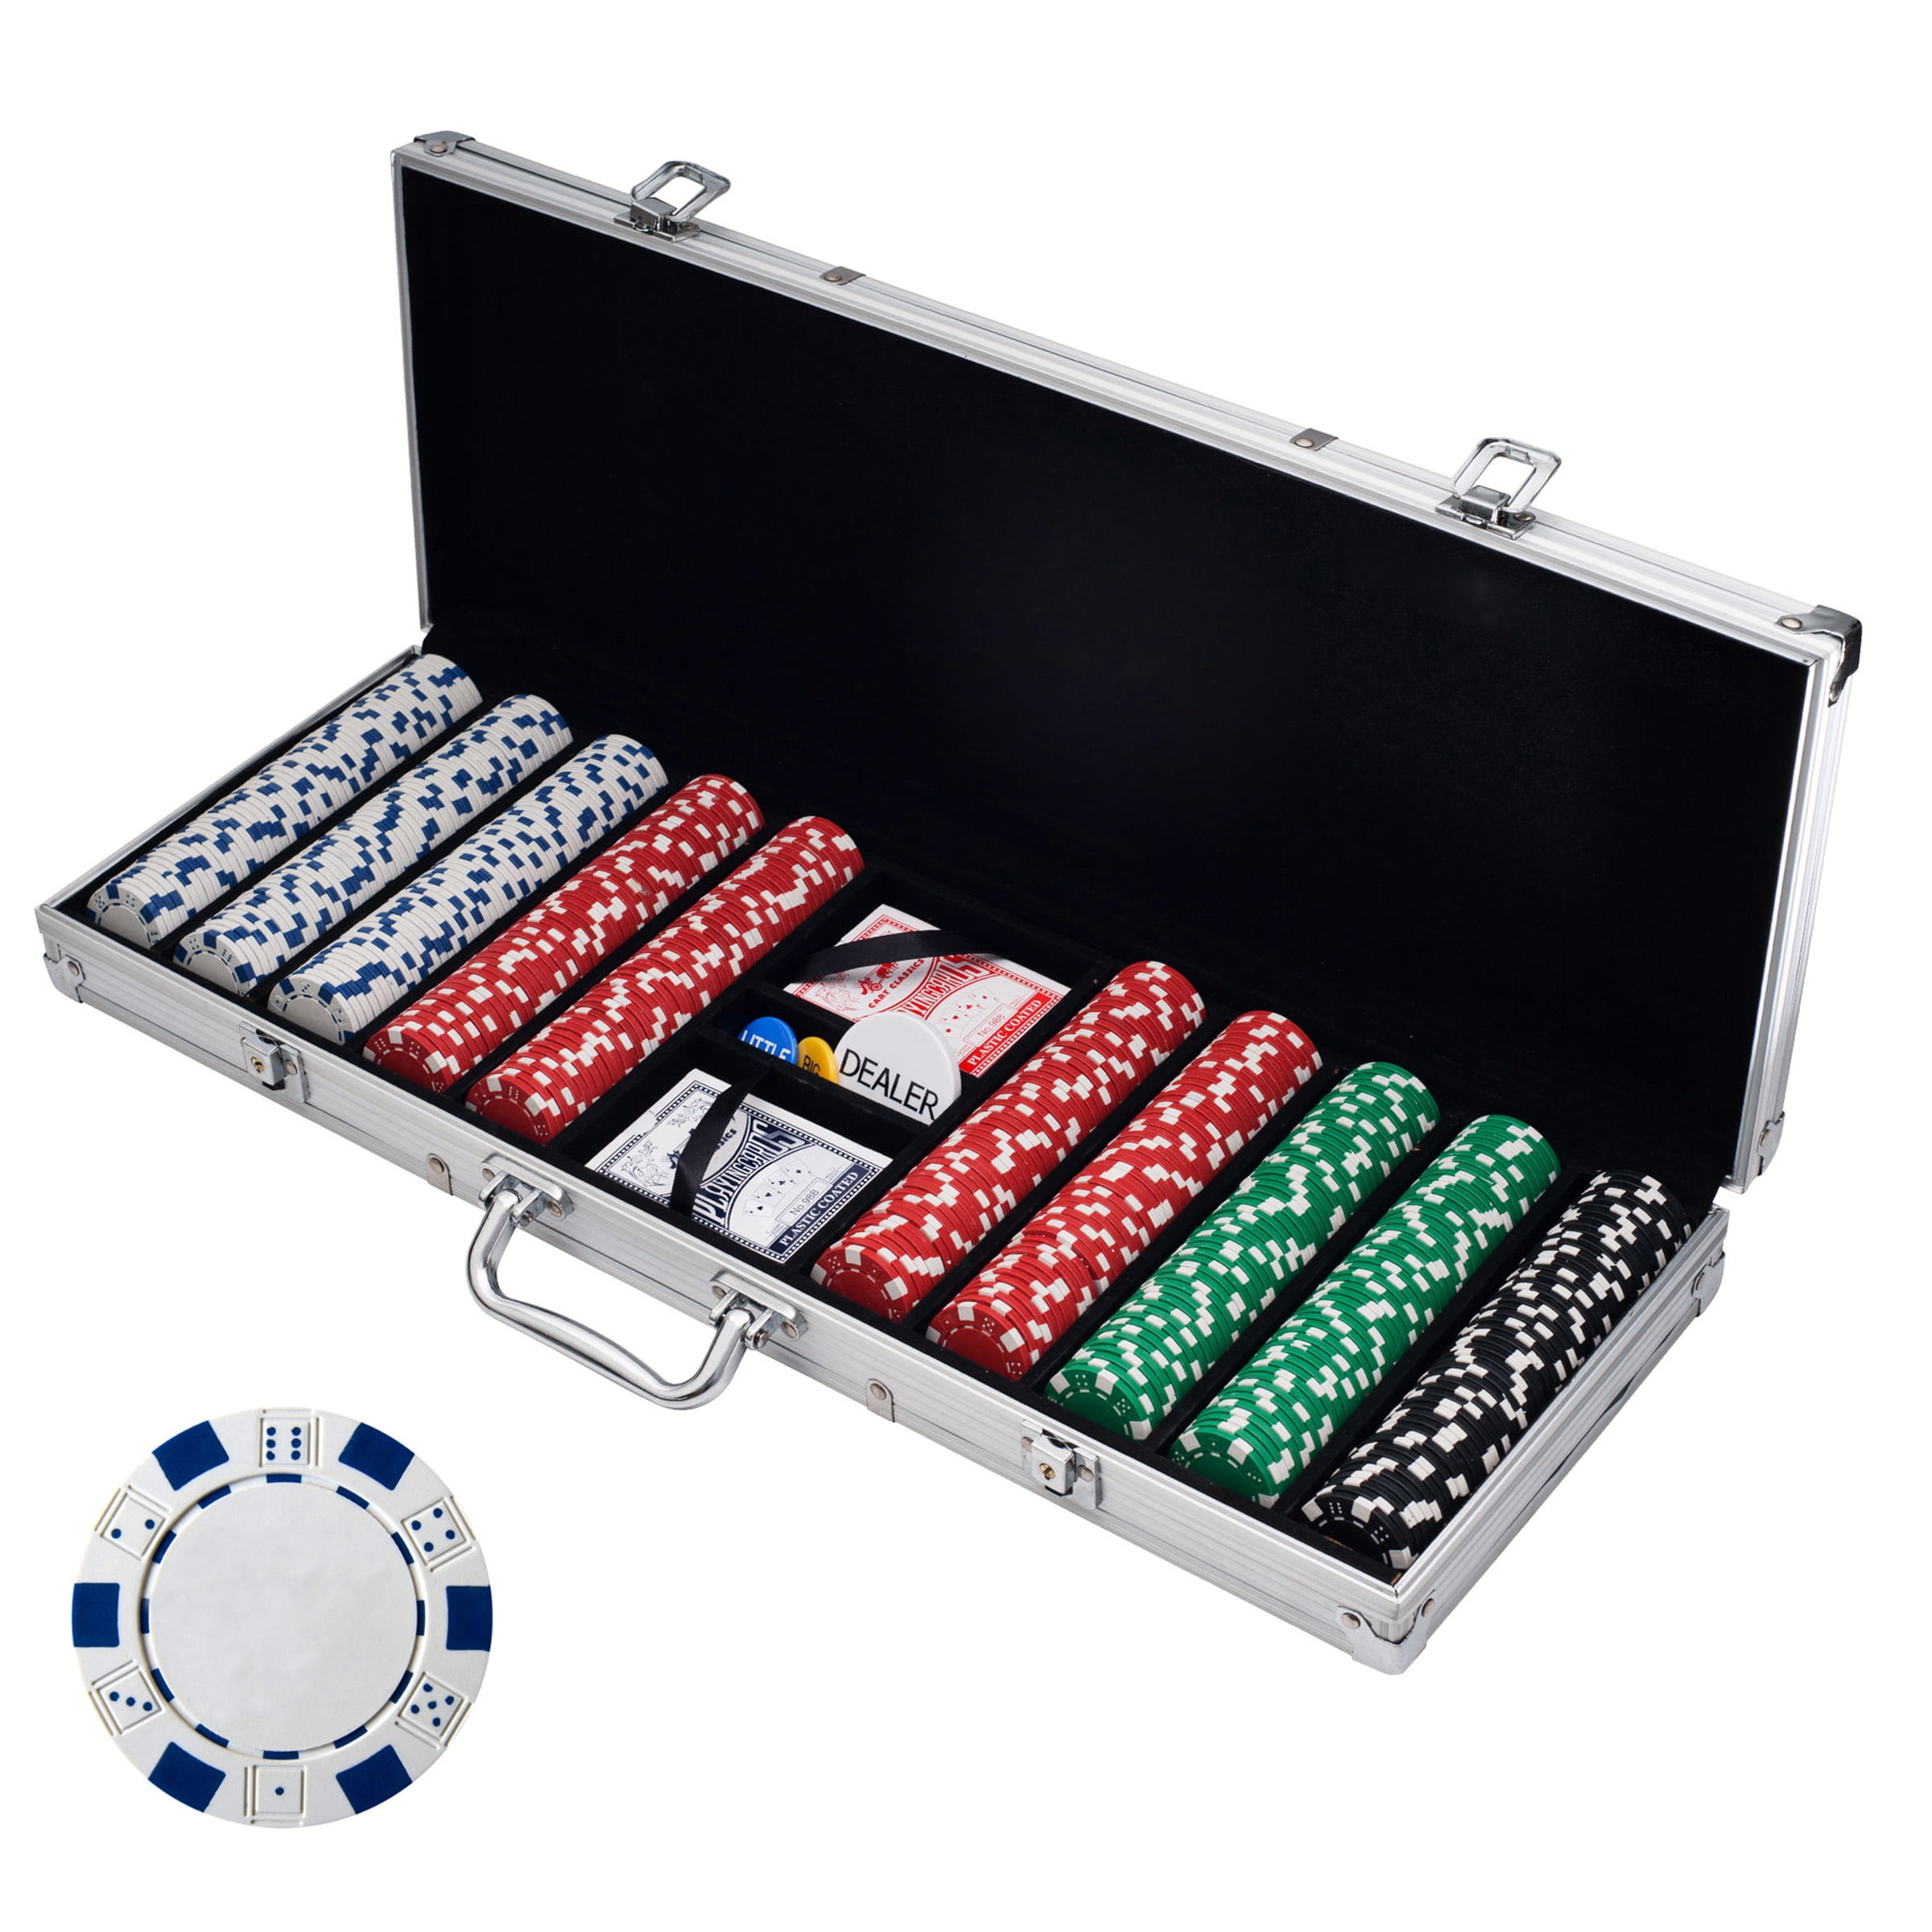 medaljevinder Ensomhed Etablere Rockin' Rollers Poker Chip Set for Texas Holdem, Blackjack, Gambling -  Walmart.com